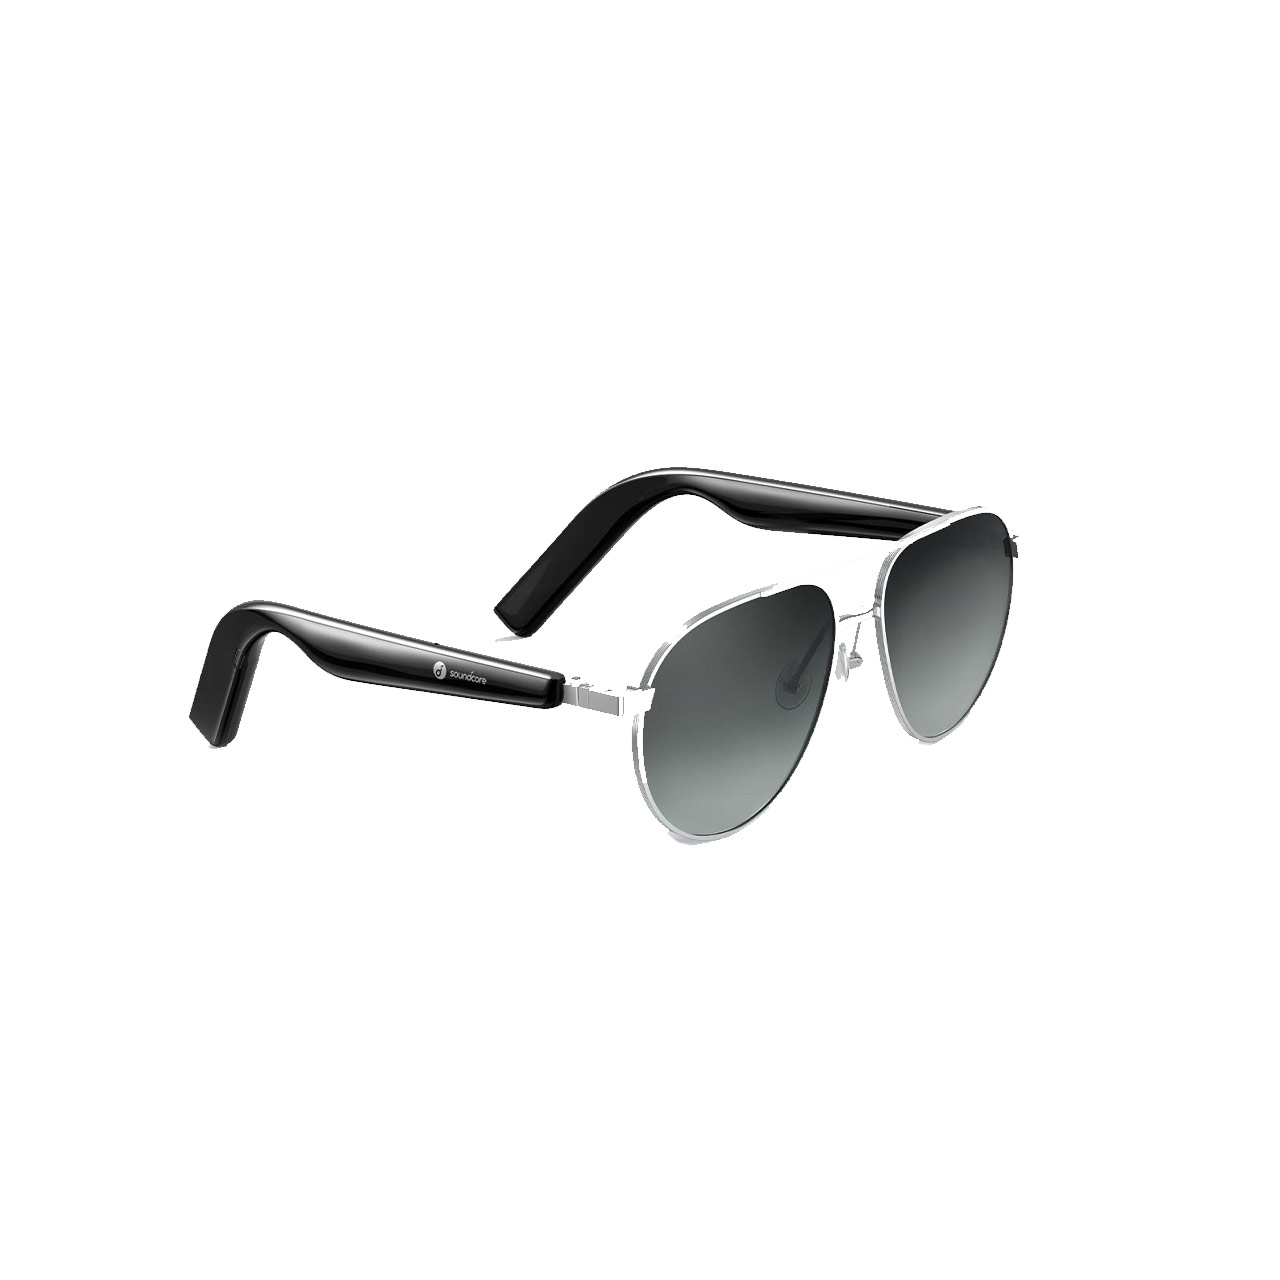 عینک هوشمند انکر مدل Soundcore Frames A3600